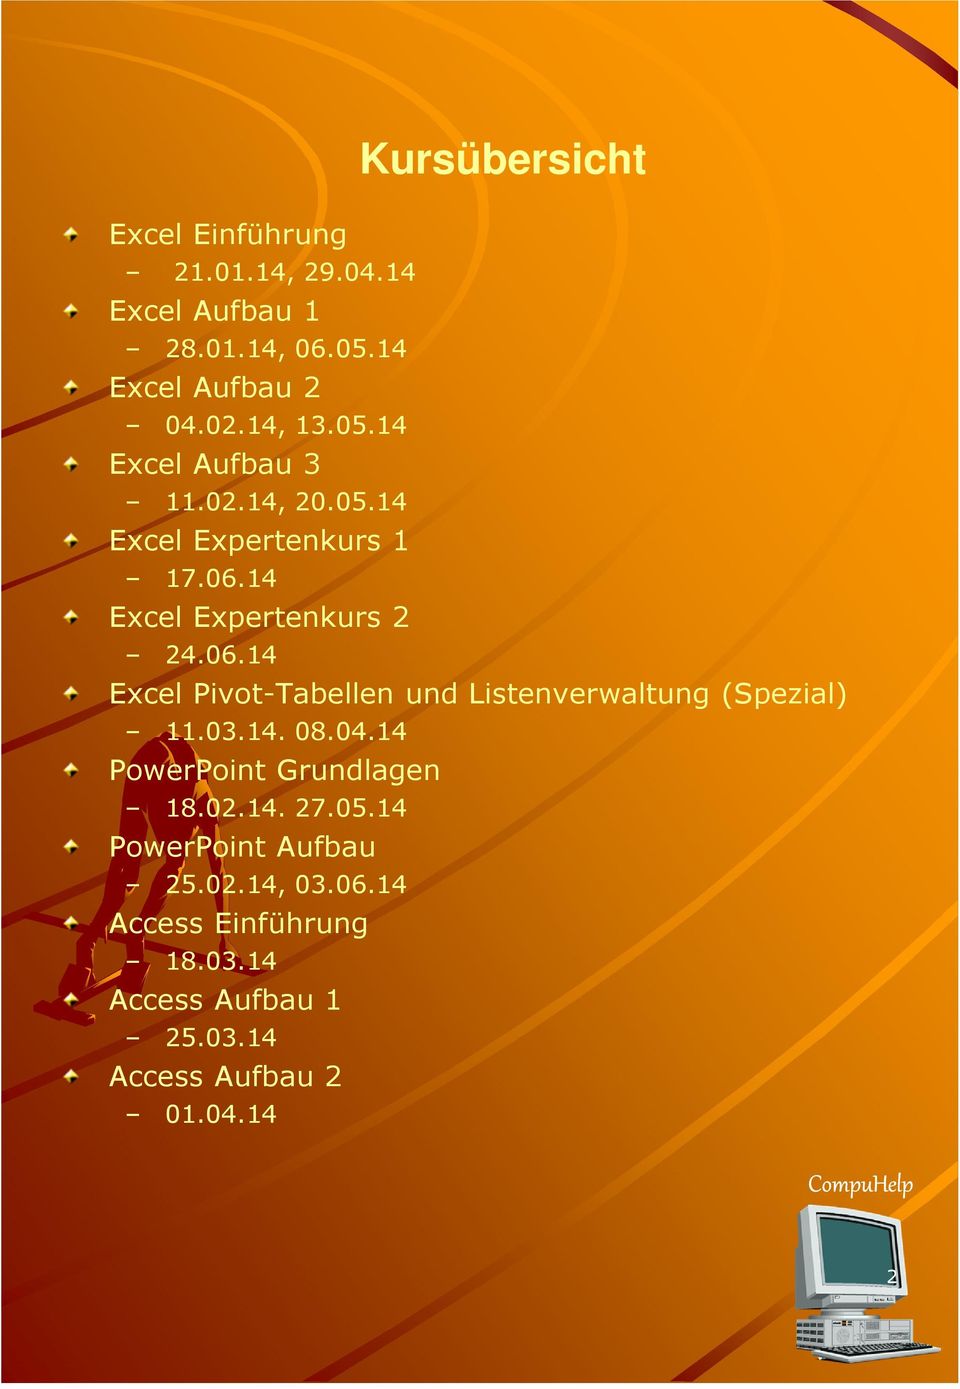 14 Excel Expertenkurs 2 24.06.14 Excel Pivot-Tabellen und Listenverwaltung (Spezial) 11.03.14. 08.04.